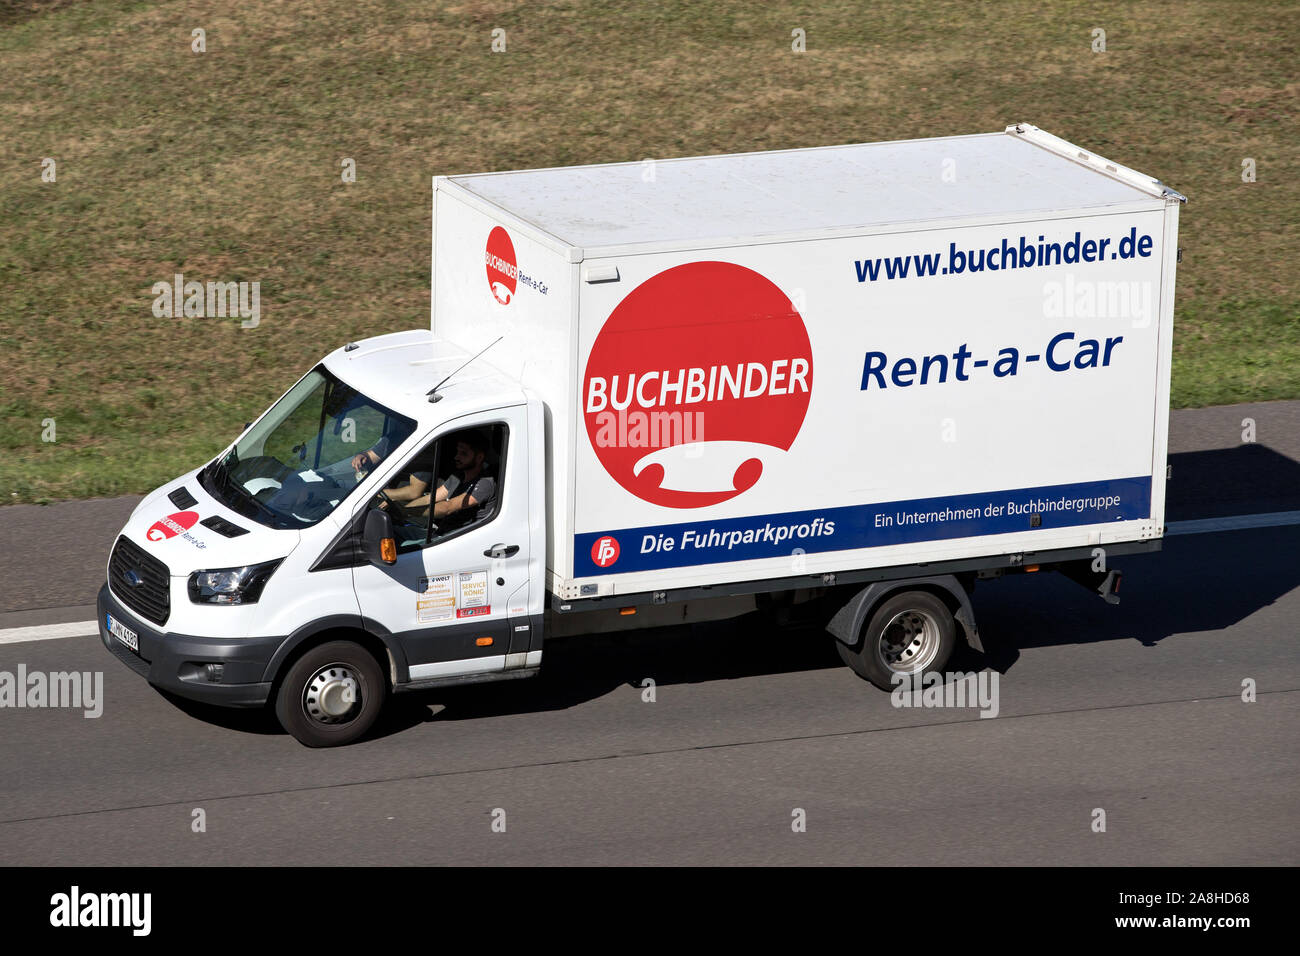 Ford Transit de Buchbinder sur autoroute. Buchbinder est une compagnie de location de voiture et d'une partie des Français Europcar Groupe de mobilité. Banque D'Images